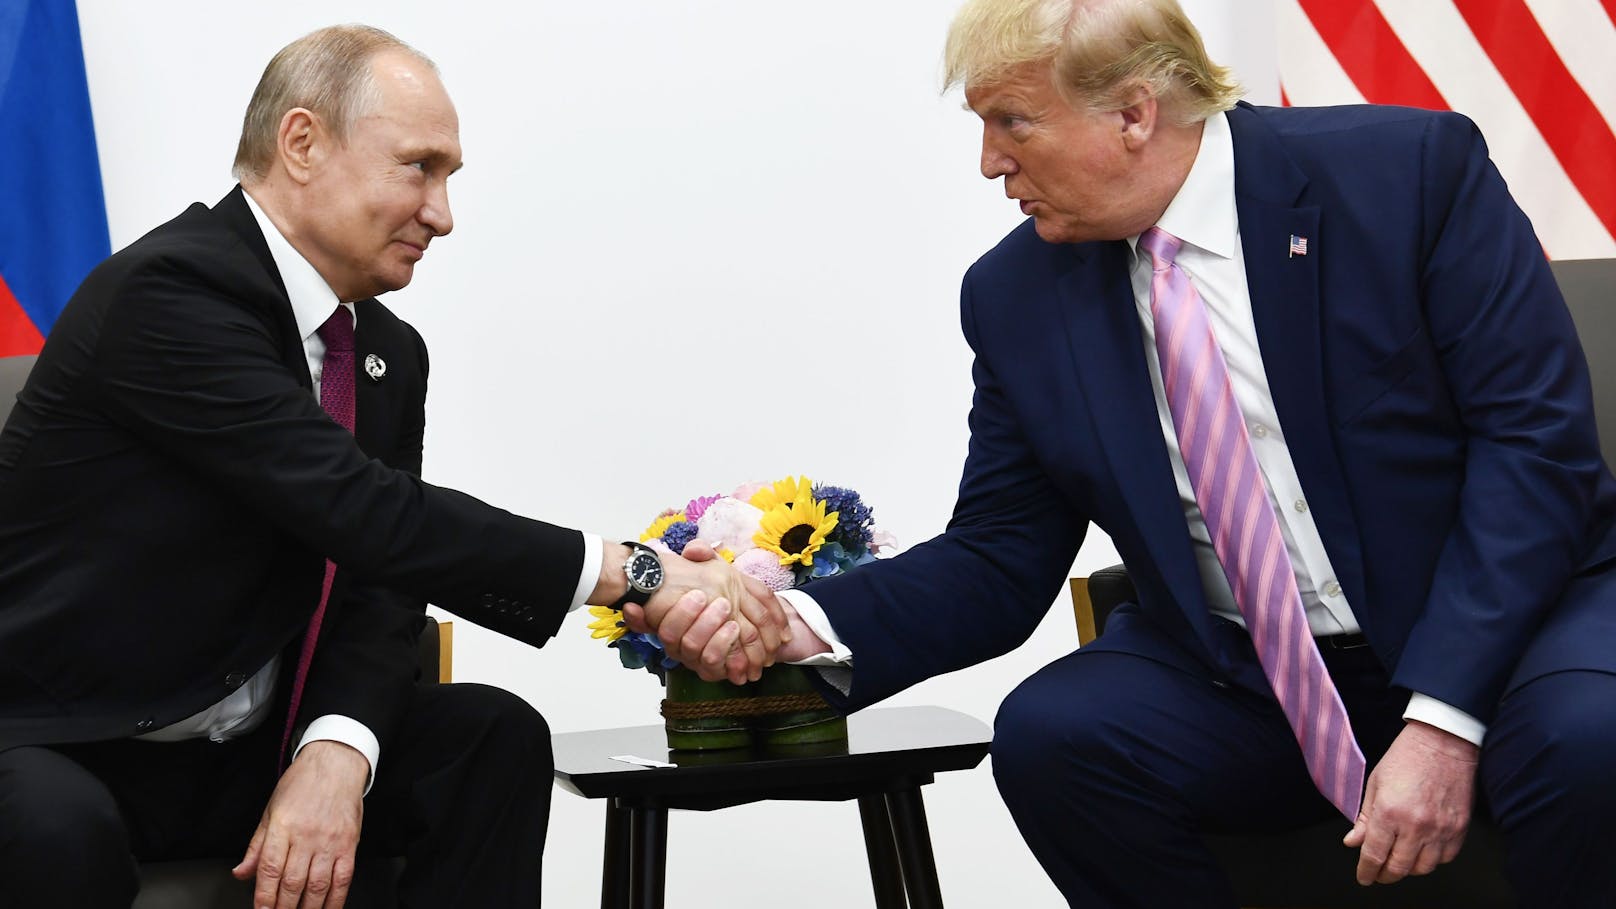 "Genial, wunderbar" – Trump reagiert auf Putin-Vorgehen